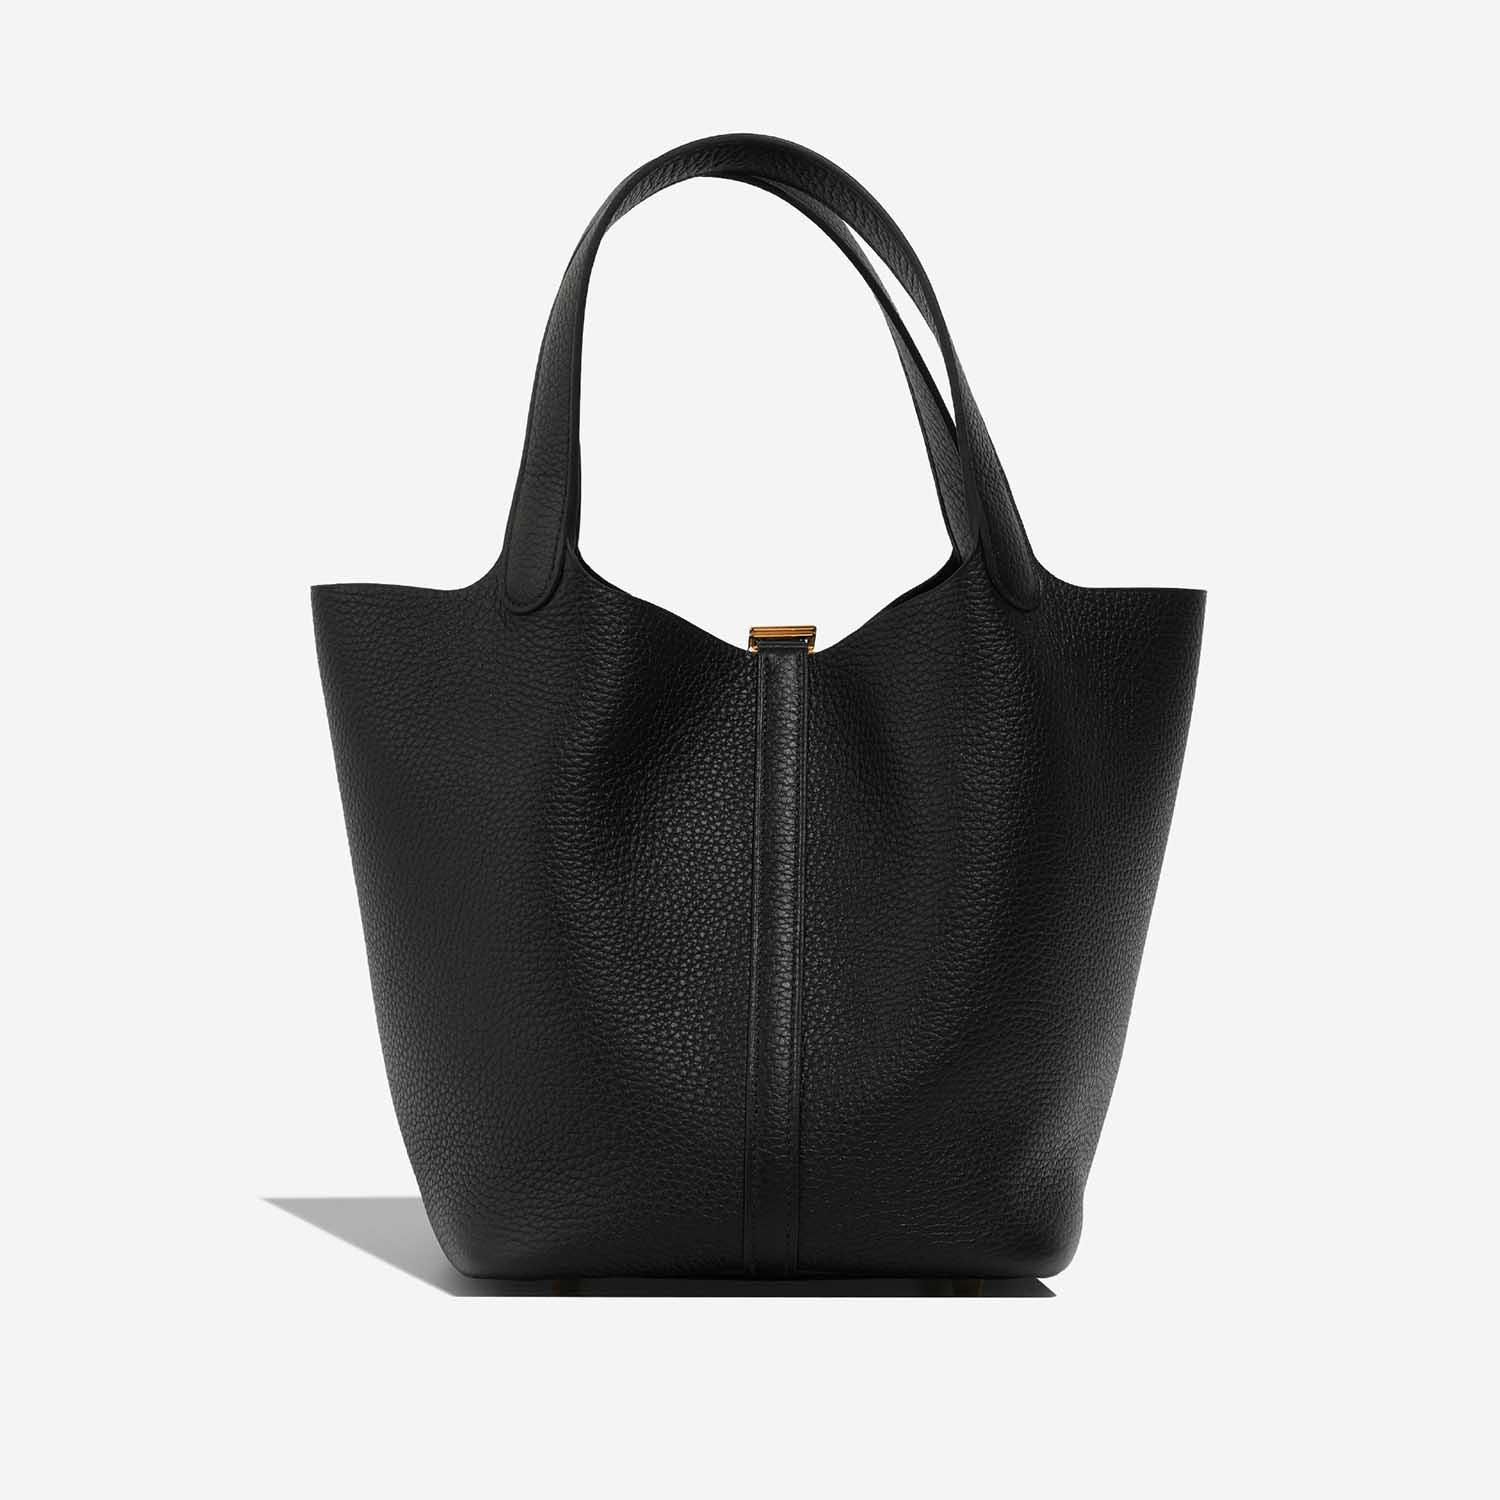 Hermès Picotin 22 Black Back | Verkaufen Sie Ihre Designer-Tasche auf Saclab.com